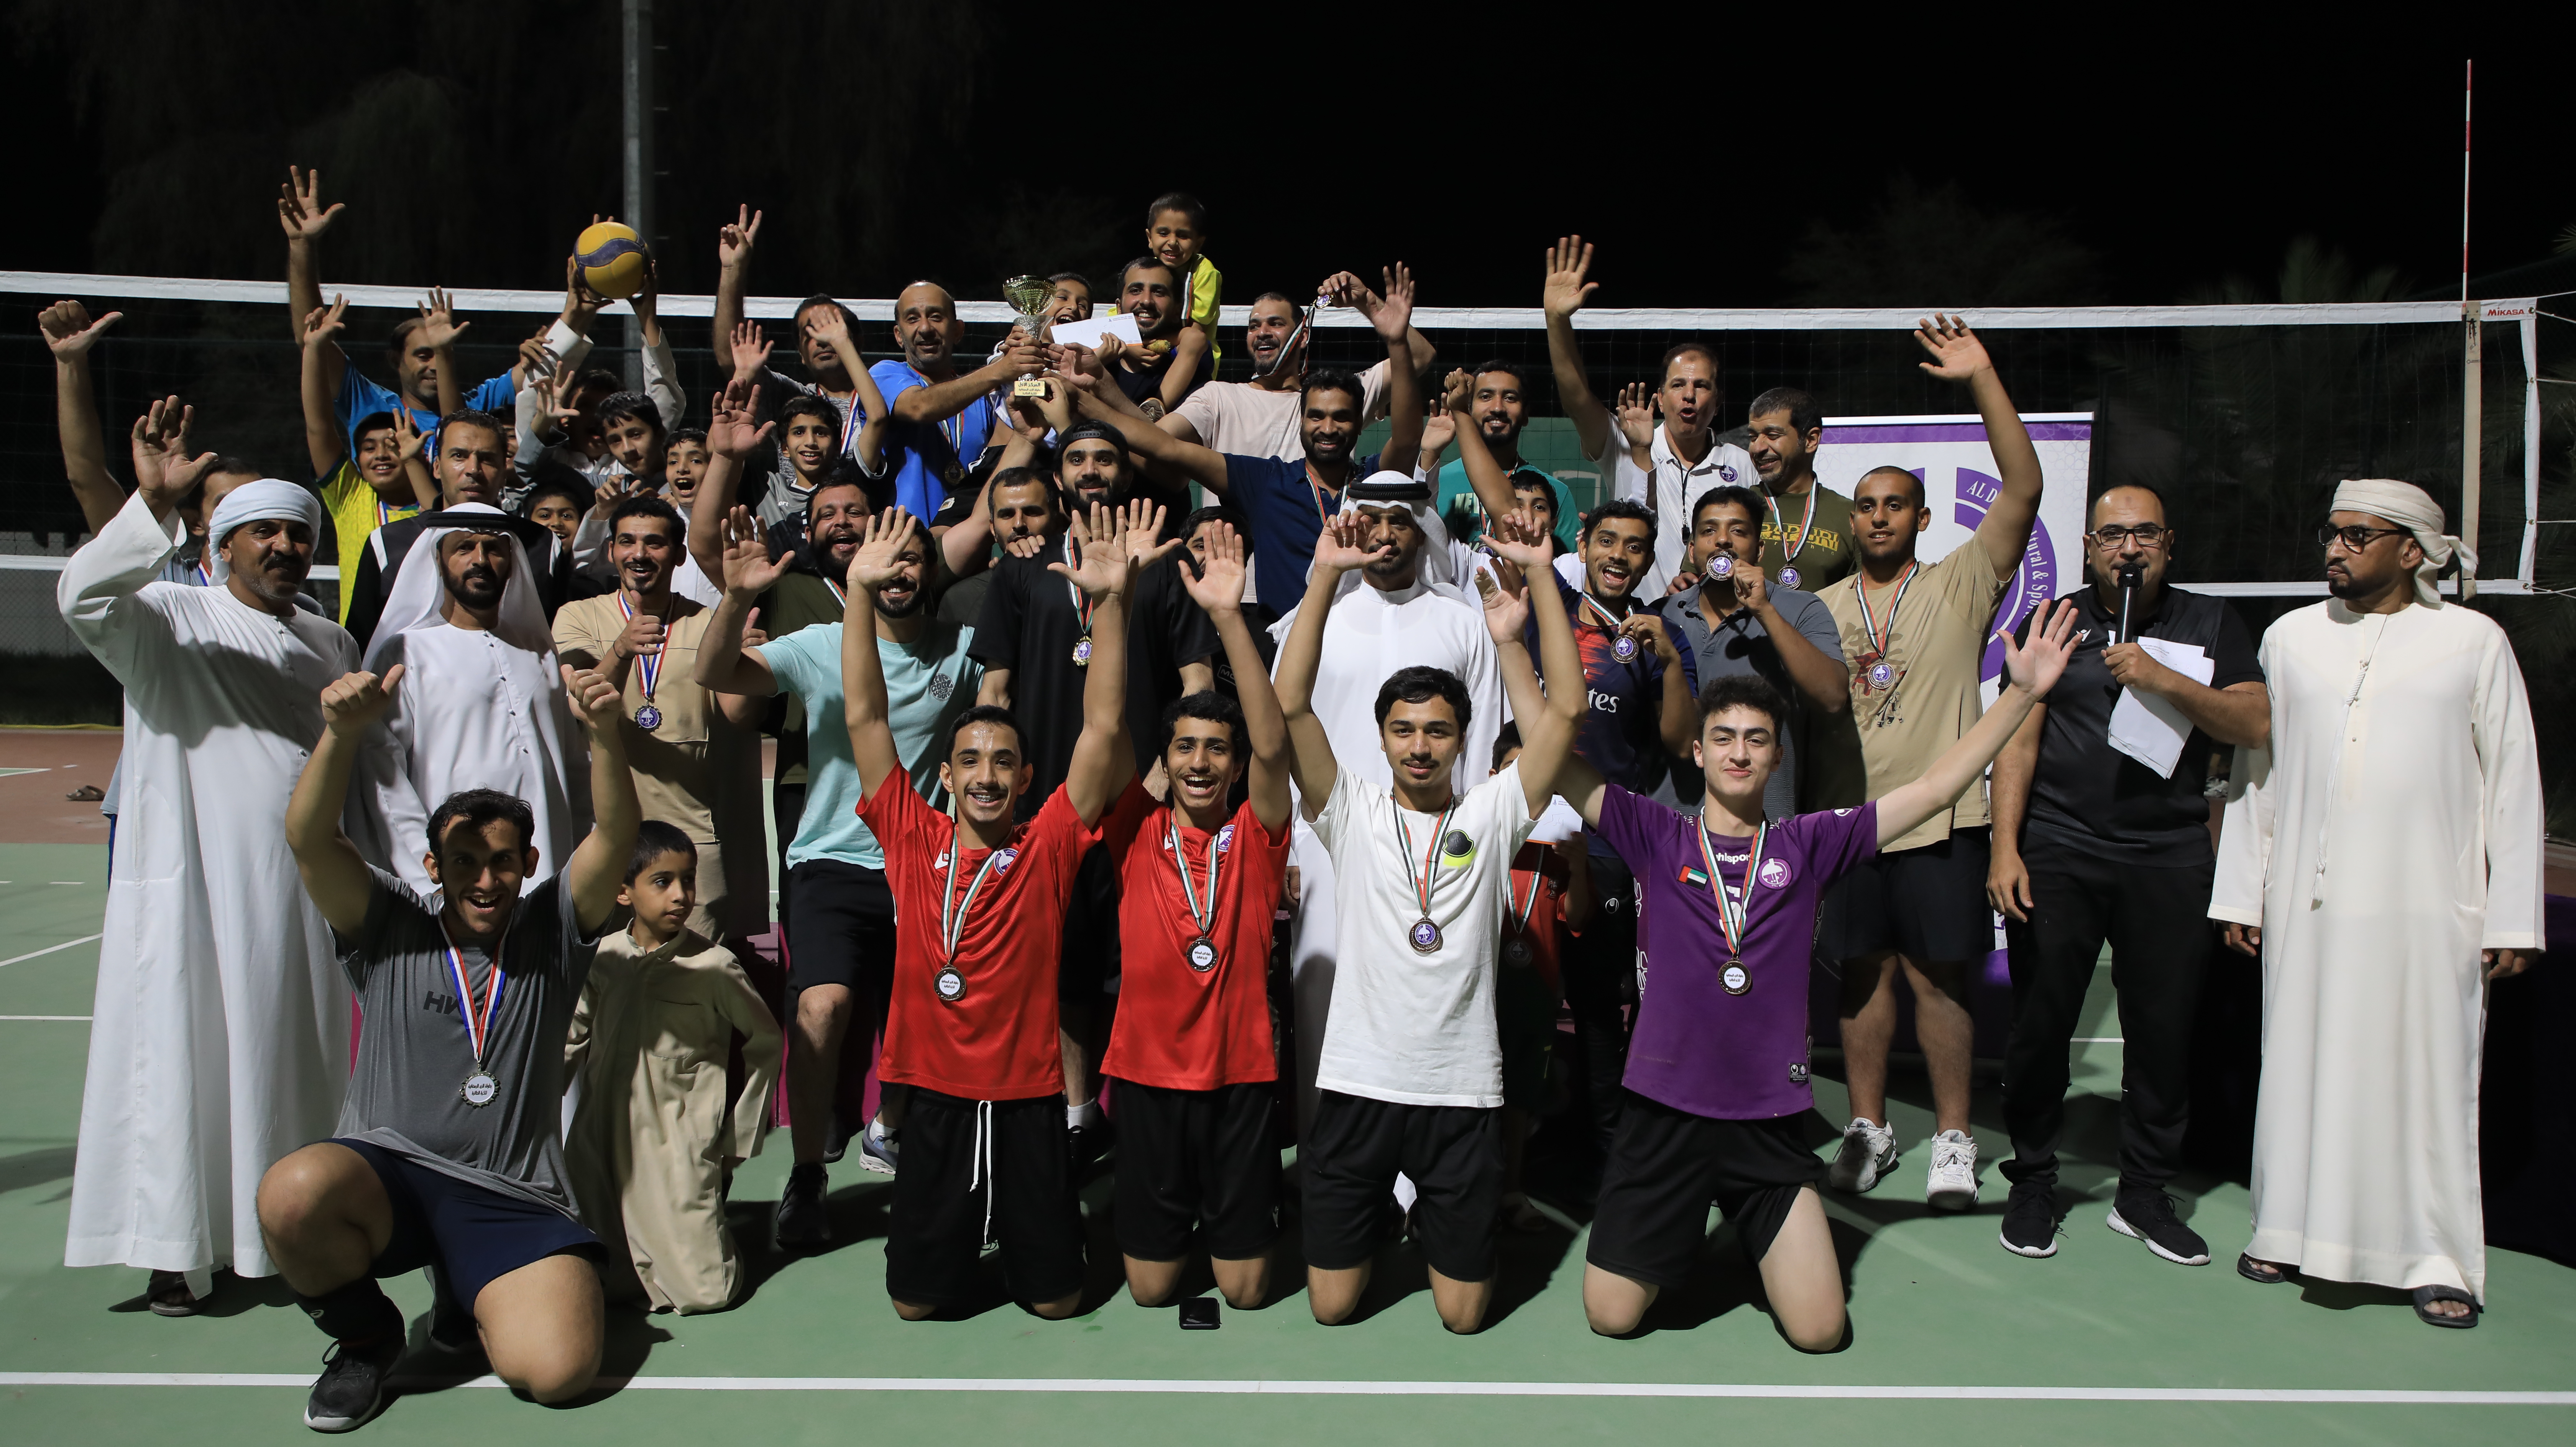 نادي الذيد الرياضي يحتفل بنجاح بطولة كرة الطائرة المجتمعية خلال شهر رمضان